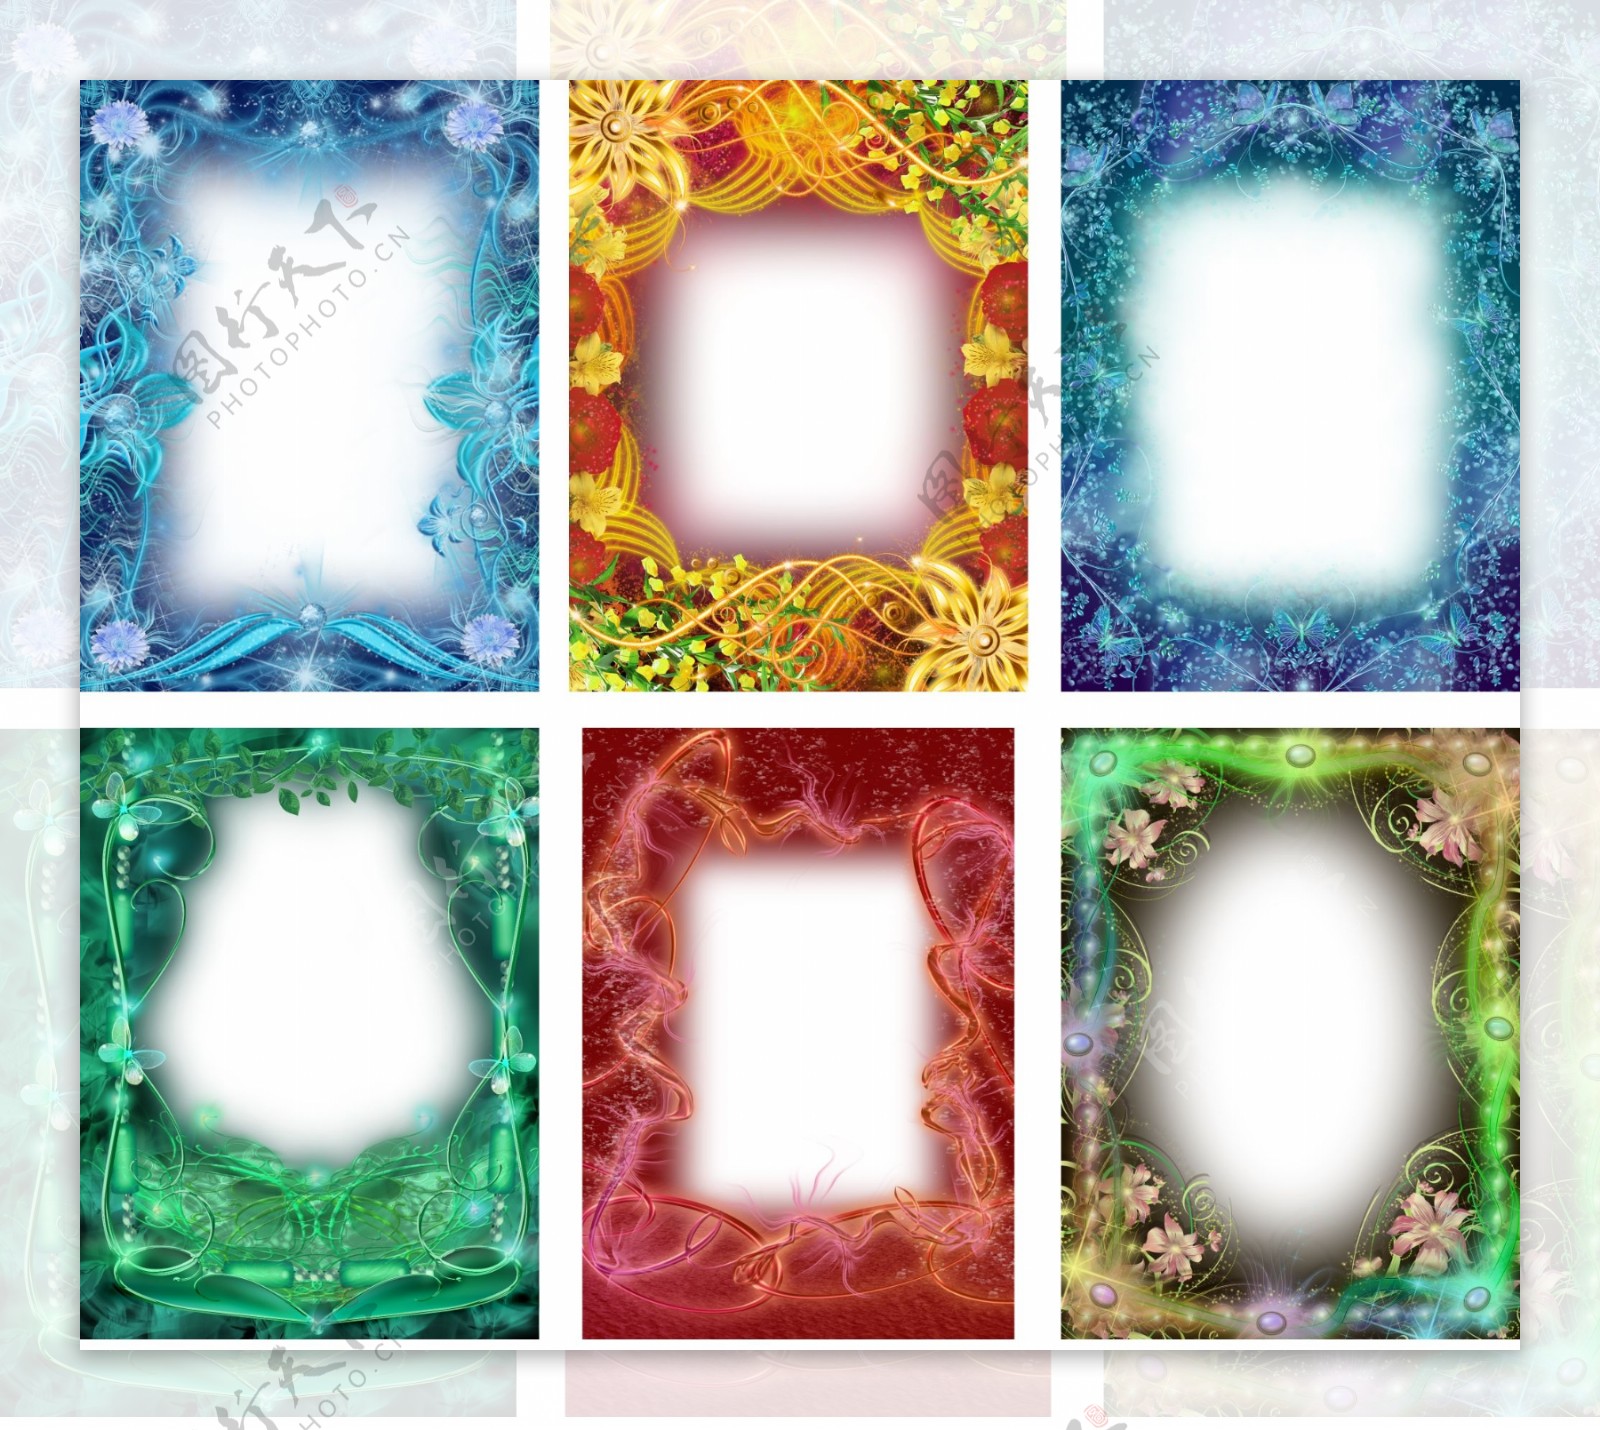 6套水晶相框单个相框不分层图片